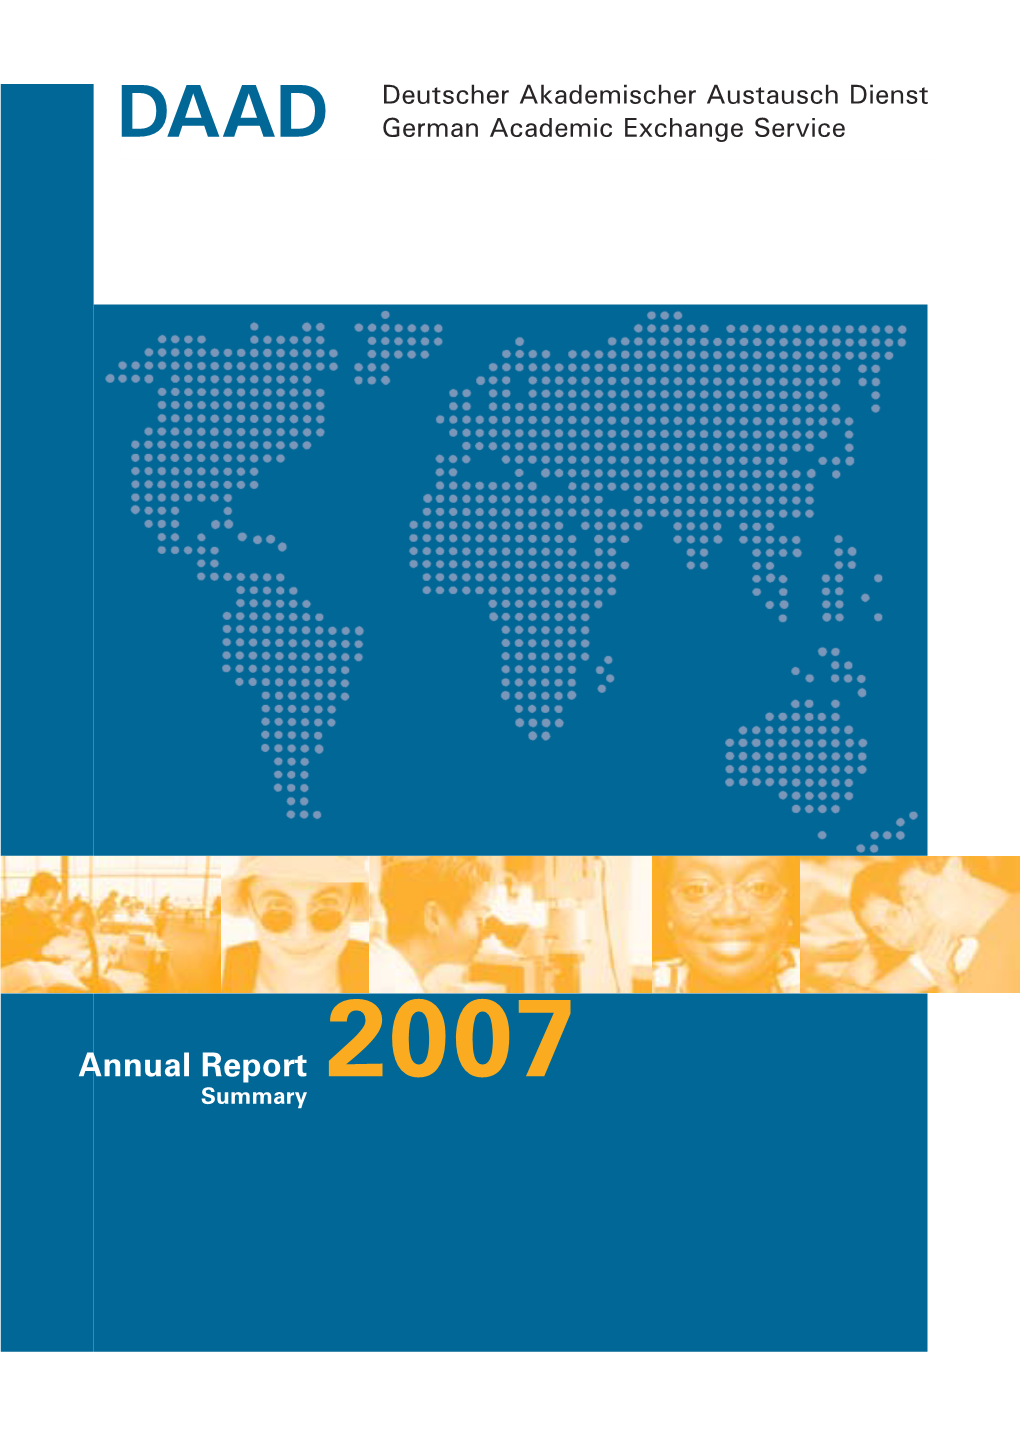 Annual Report 2007 Summary Published By: Deutscher Akademischer Austauschdienst (DAAD) Kennedyallee 50 D-53175 Bonn Germany Editorial Responsibility: Dr